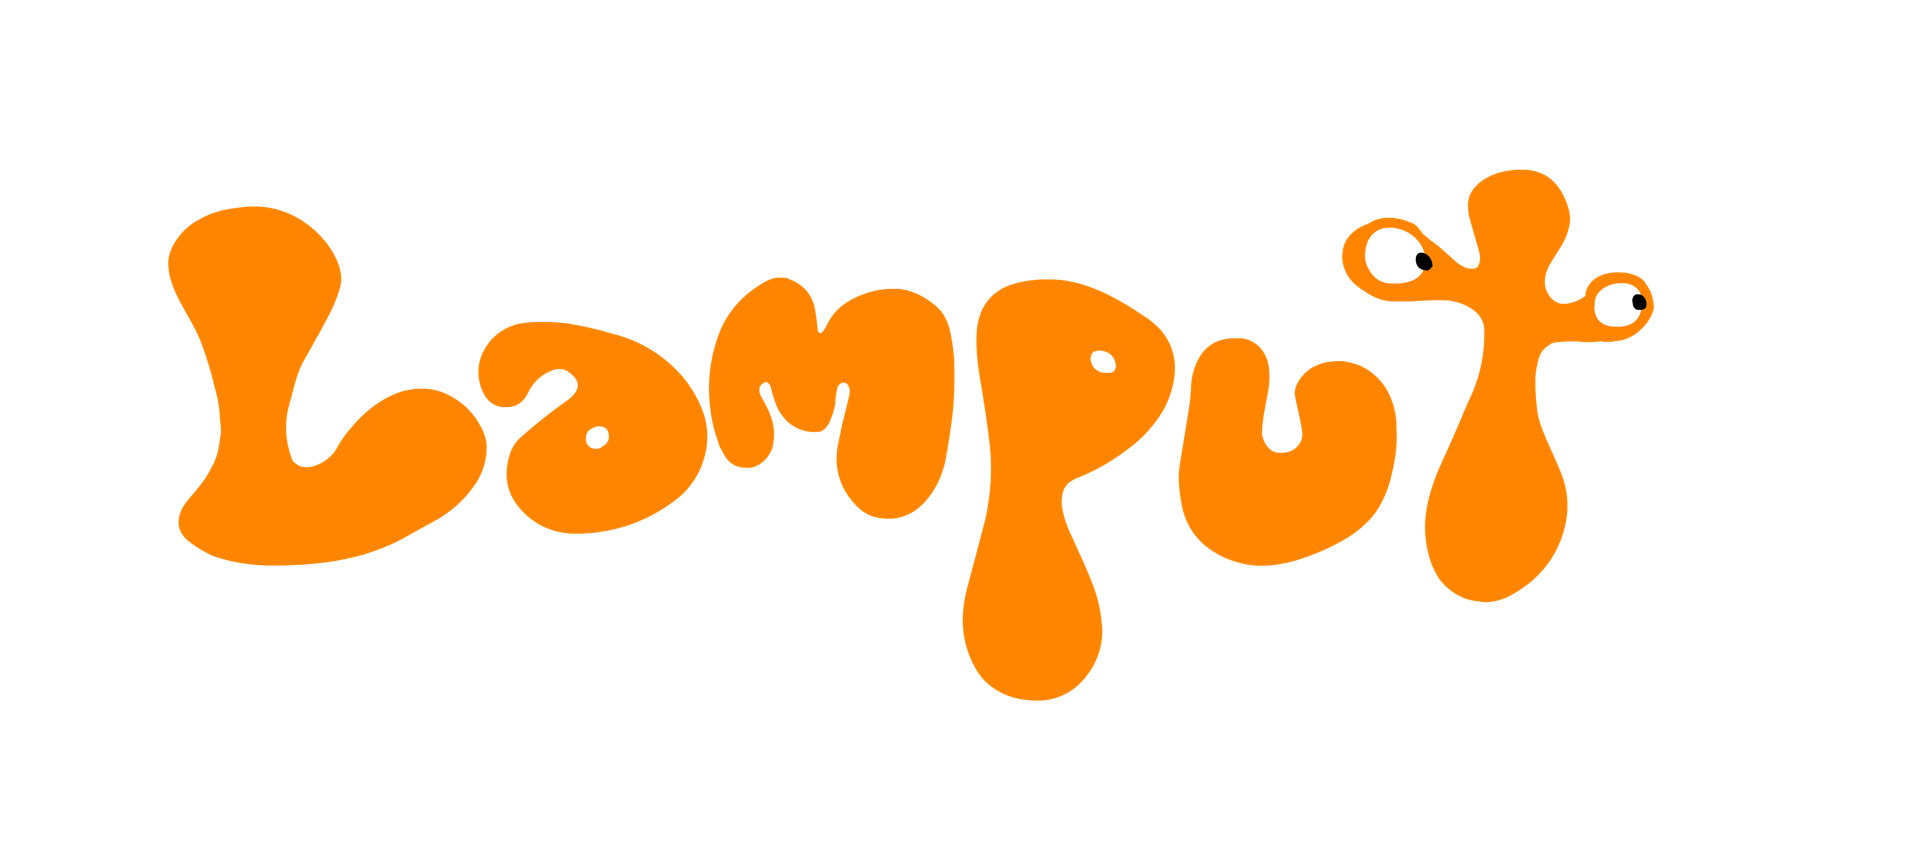 Watch Lamput videos online